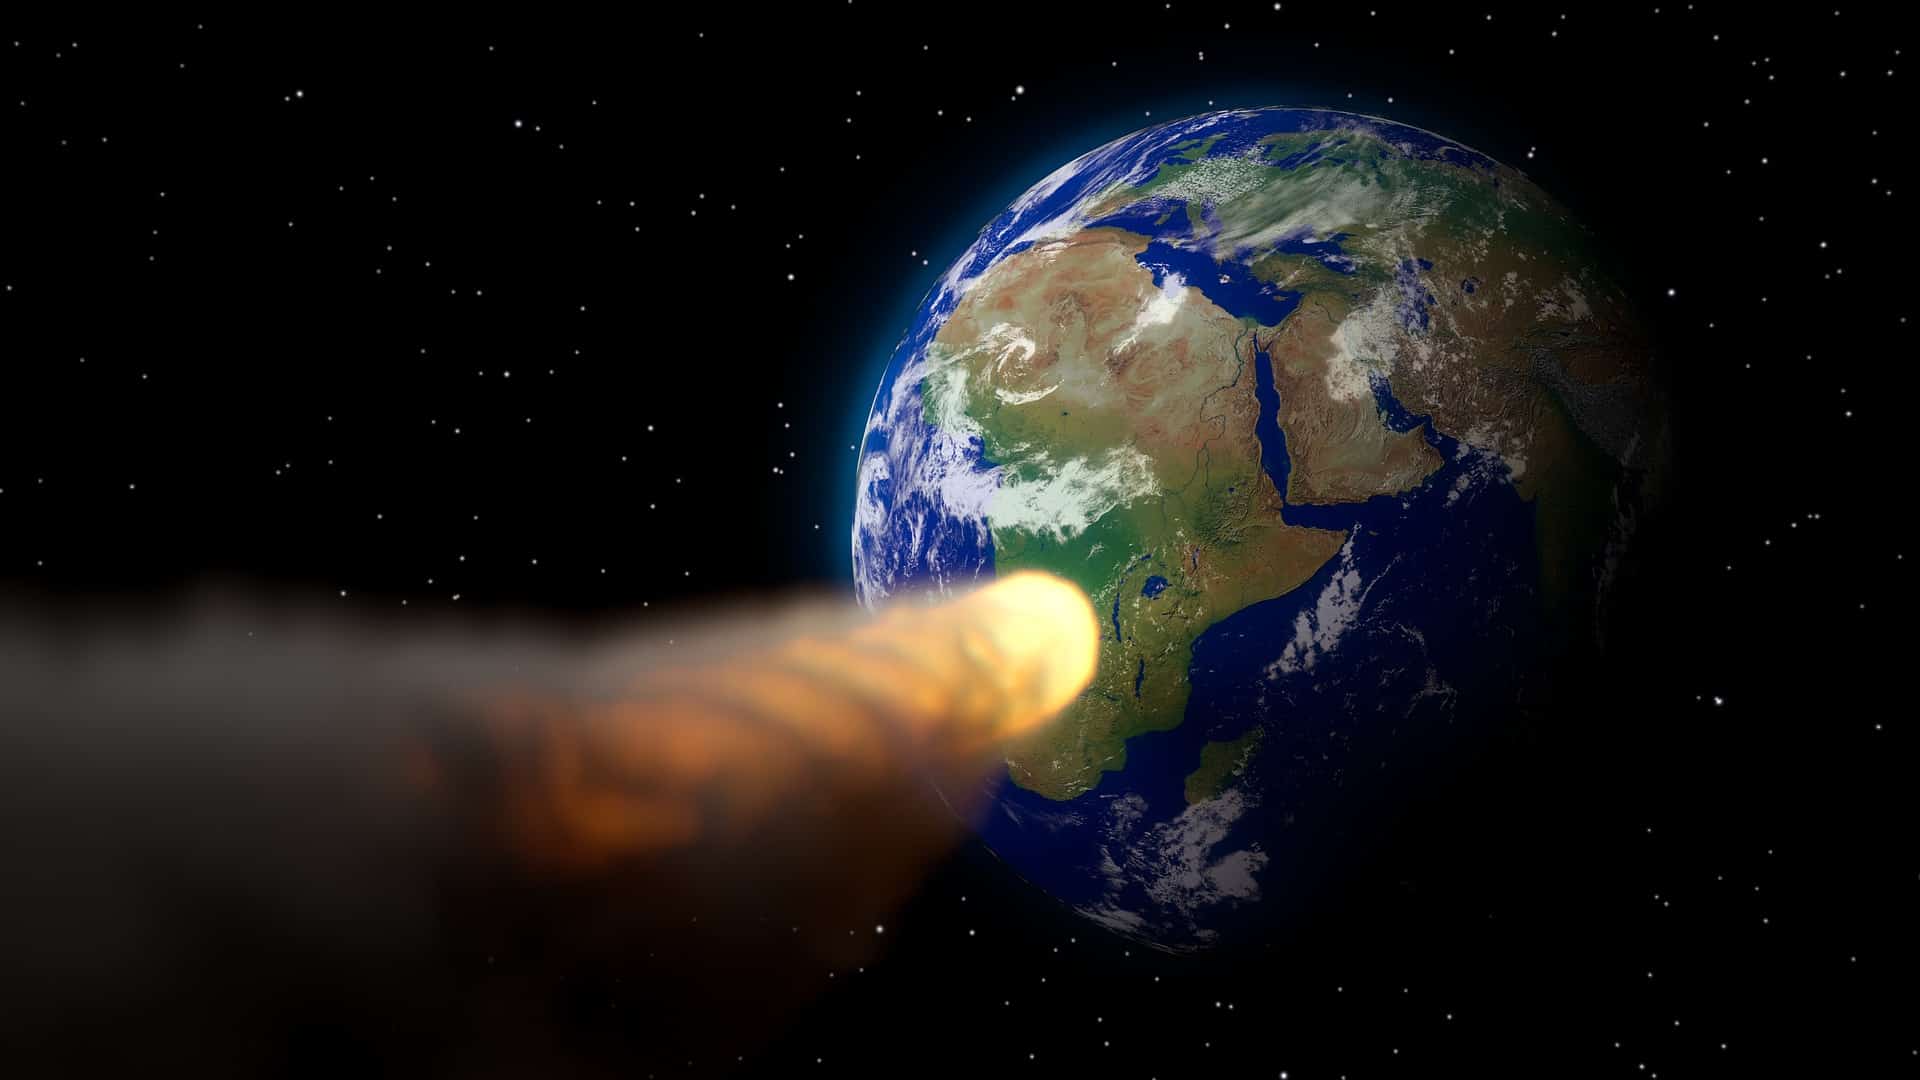 menacing asteroid hurling towards Earth